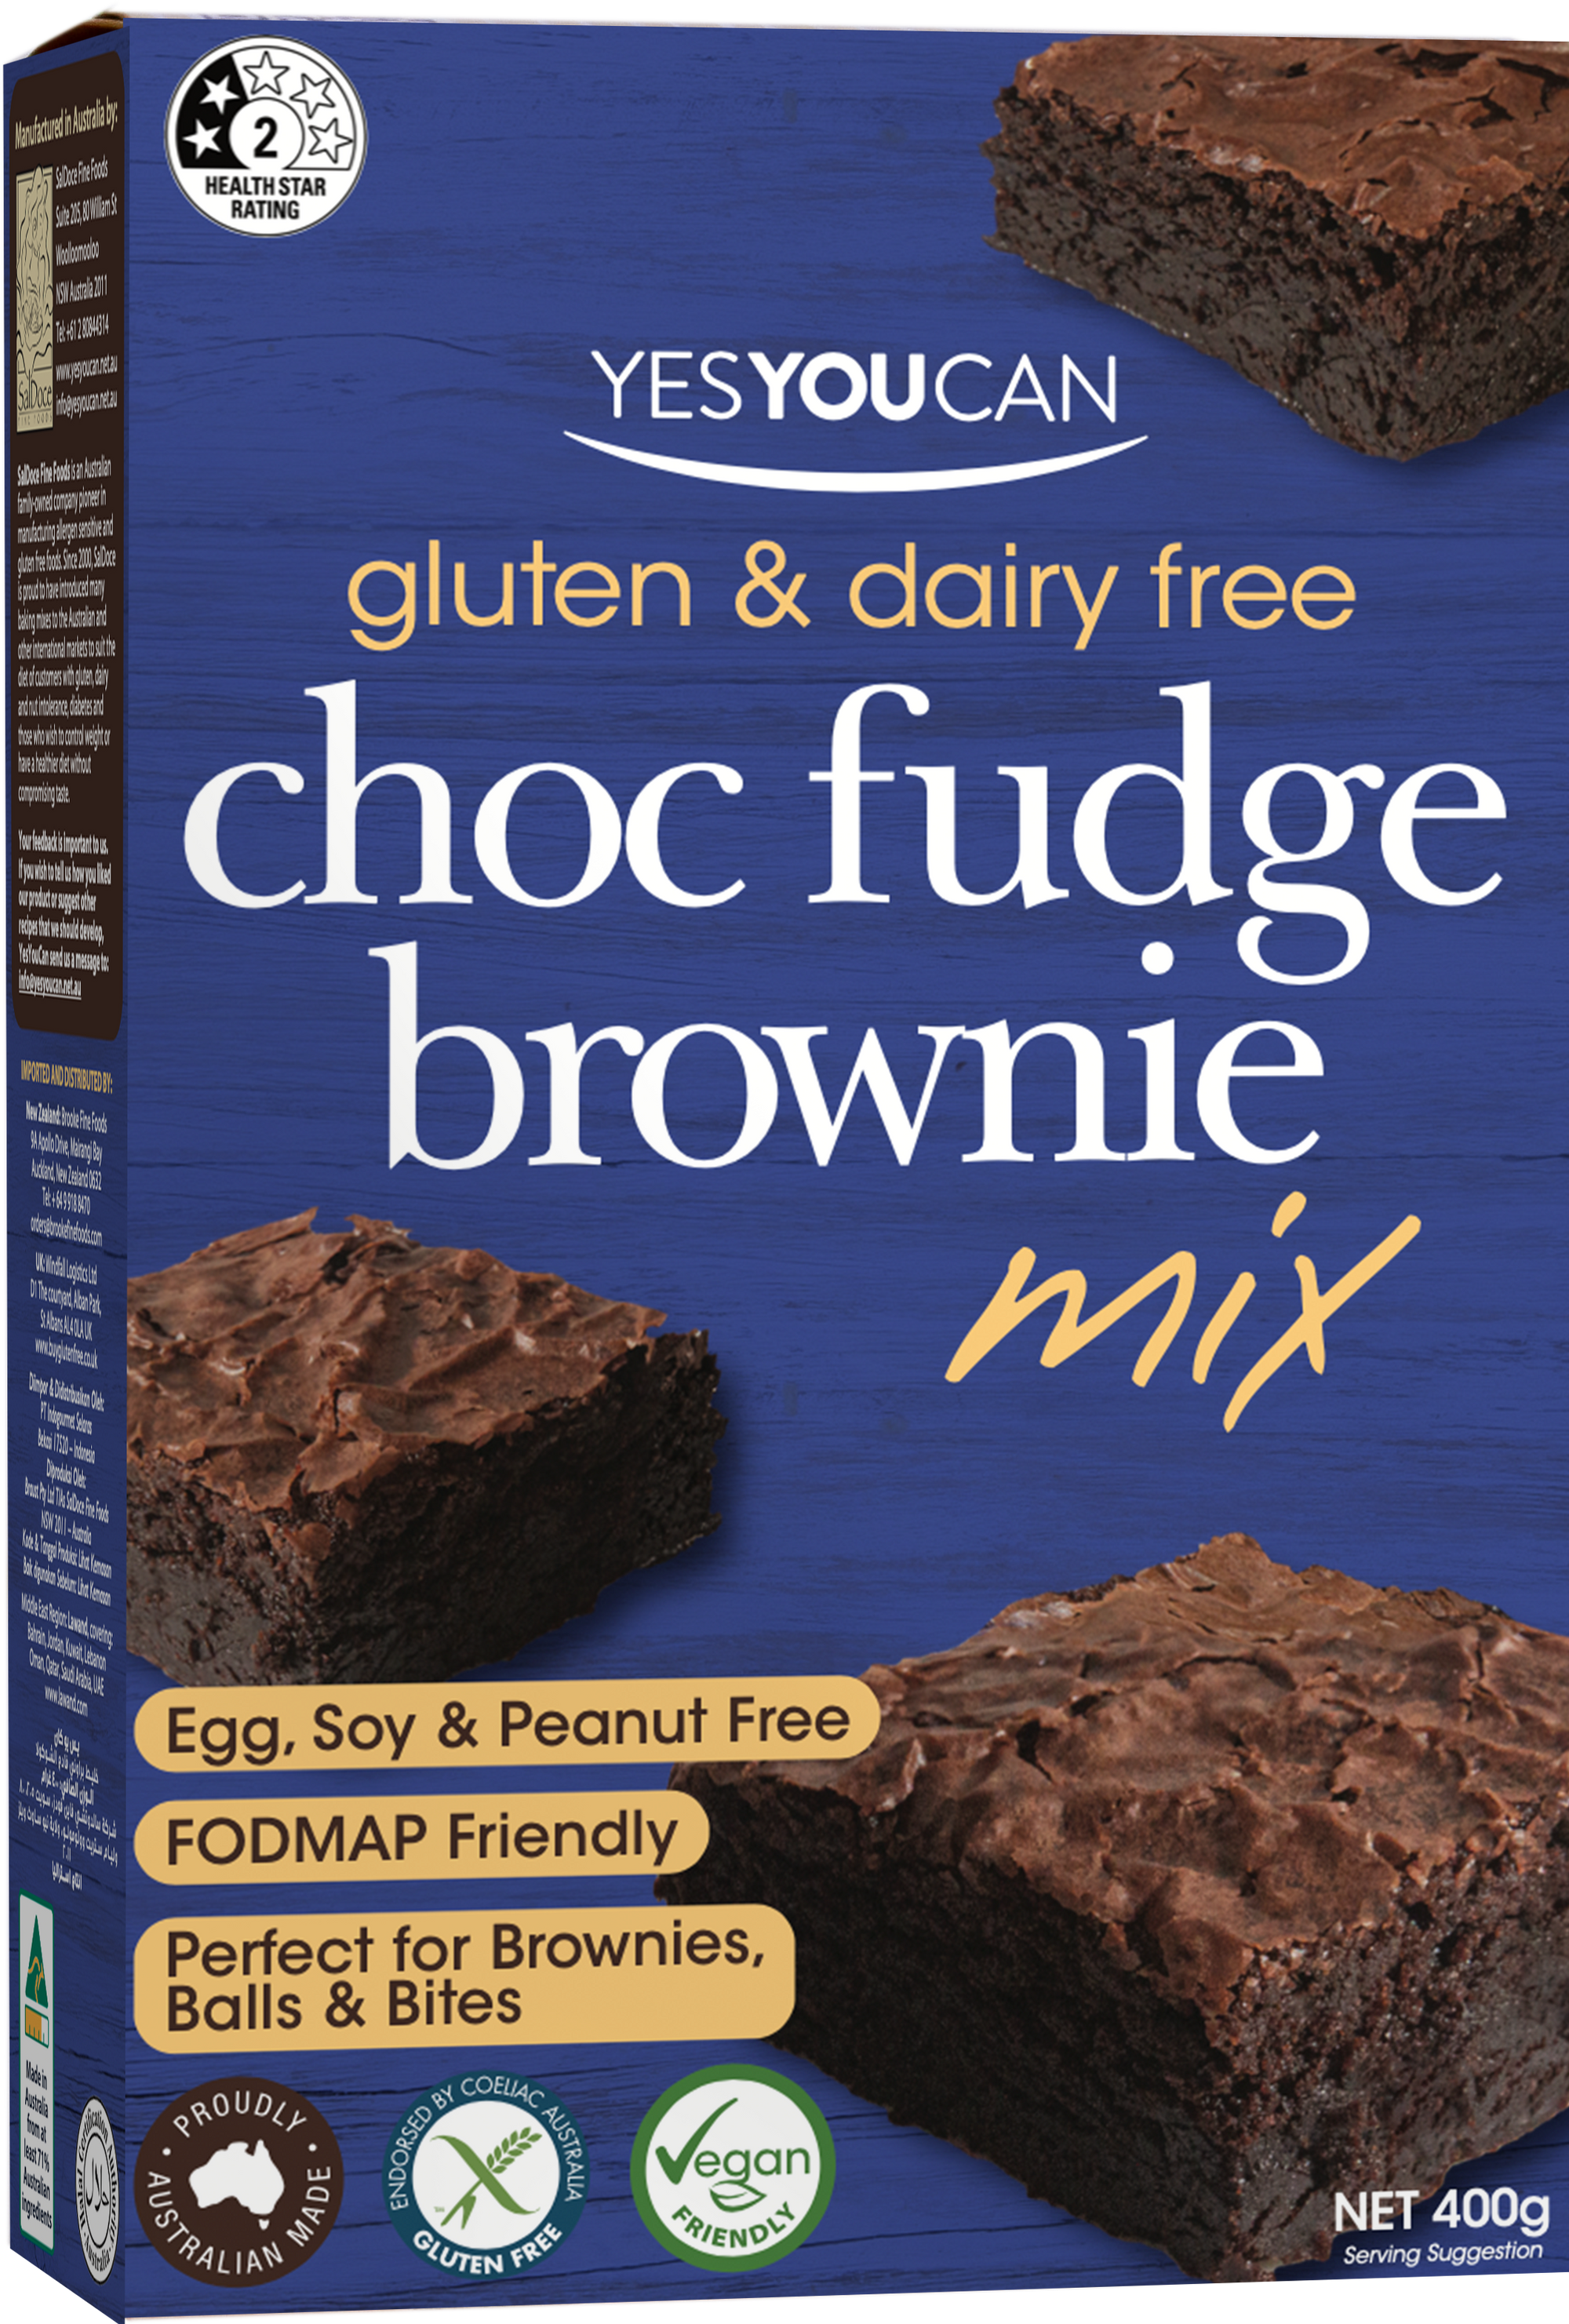 Choc Fudge Brownie - Coming Soon!